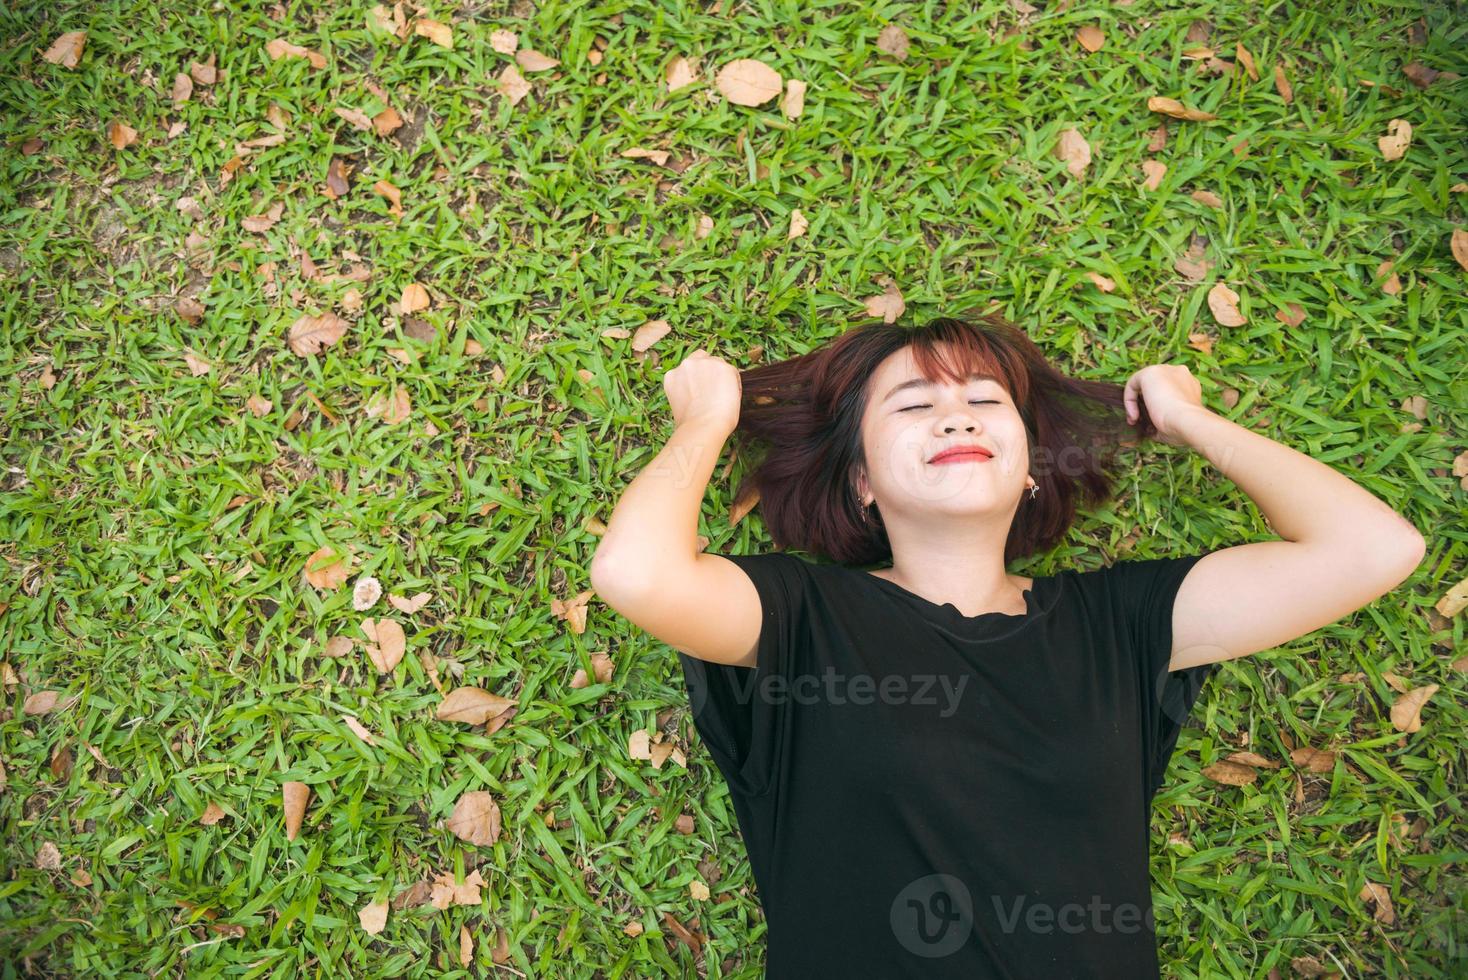 jonge aziatische vrouw die op het groene gras ligt en luistert naar muziek in het park met een koude emotie. jonge vrouw ontspannen op het gras met haar muziekafspeellijst. buitenactiviteit in het parkconcept. foto